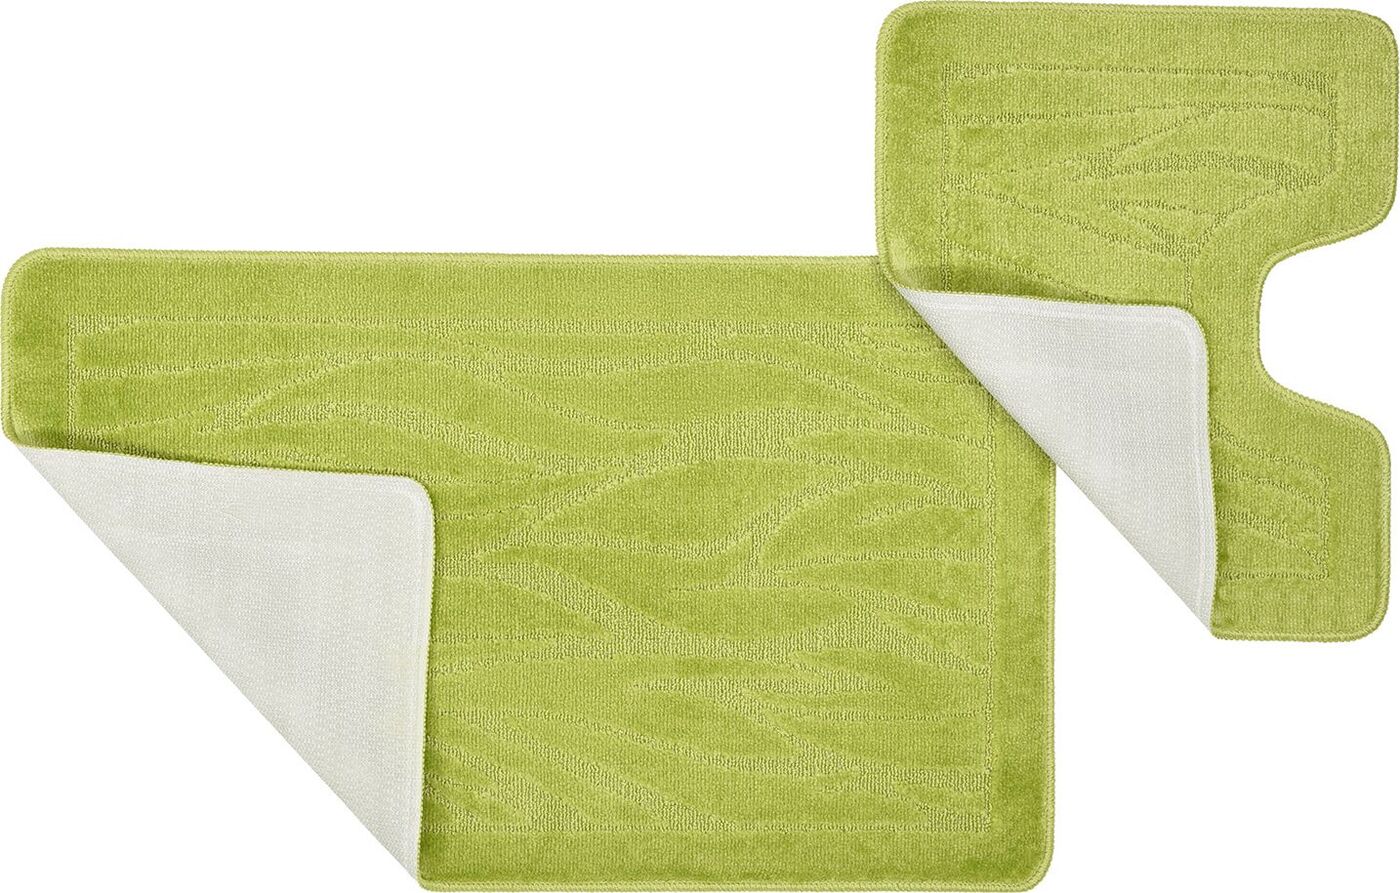 Купить набор ковриков для ванны. Коврик для ванны салатовый. Набор ковриков зелёный. Набор ковриков для ванной зеленый с узорами. Набор ковриков для ванной коричневый.